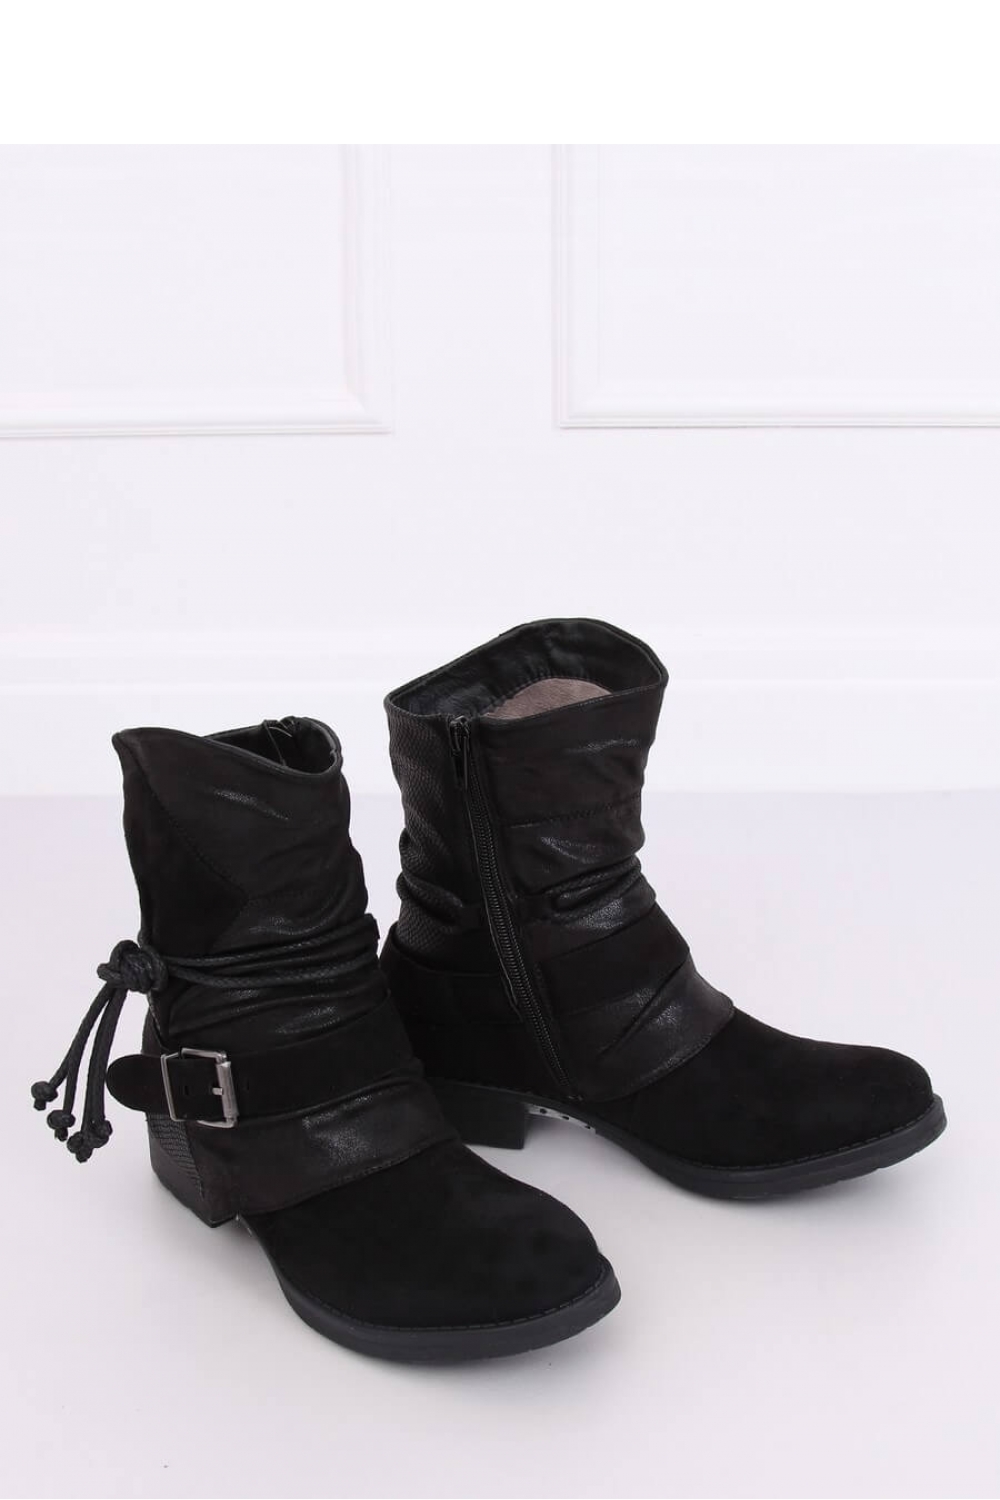 Boots model 134701 Inello black Ladies